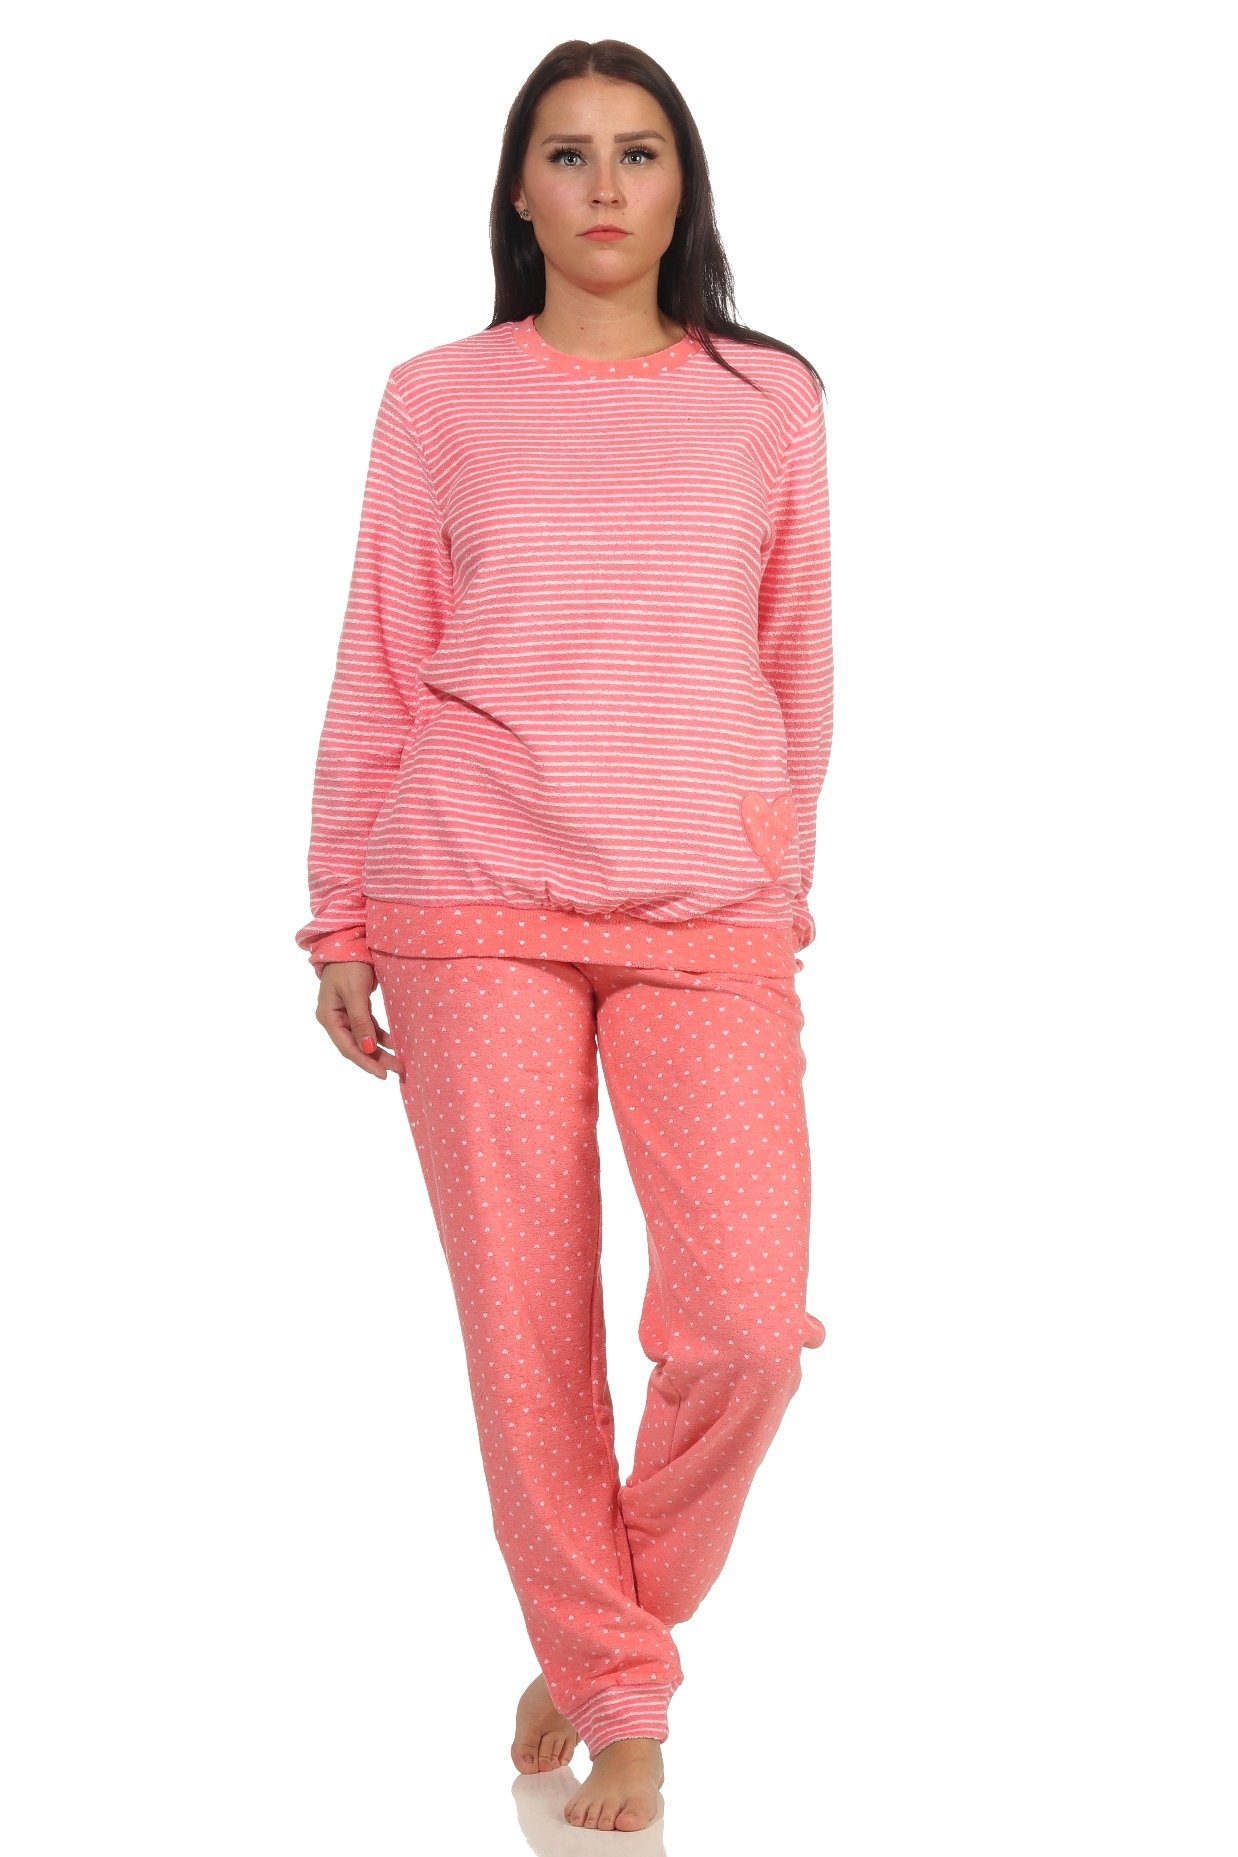 Ringel Normann Herz-Tupfen Bündchen Damen Lachs in Pyjama Frottee Pyjama Streifenoptik mit